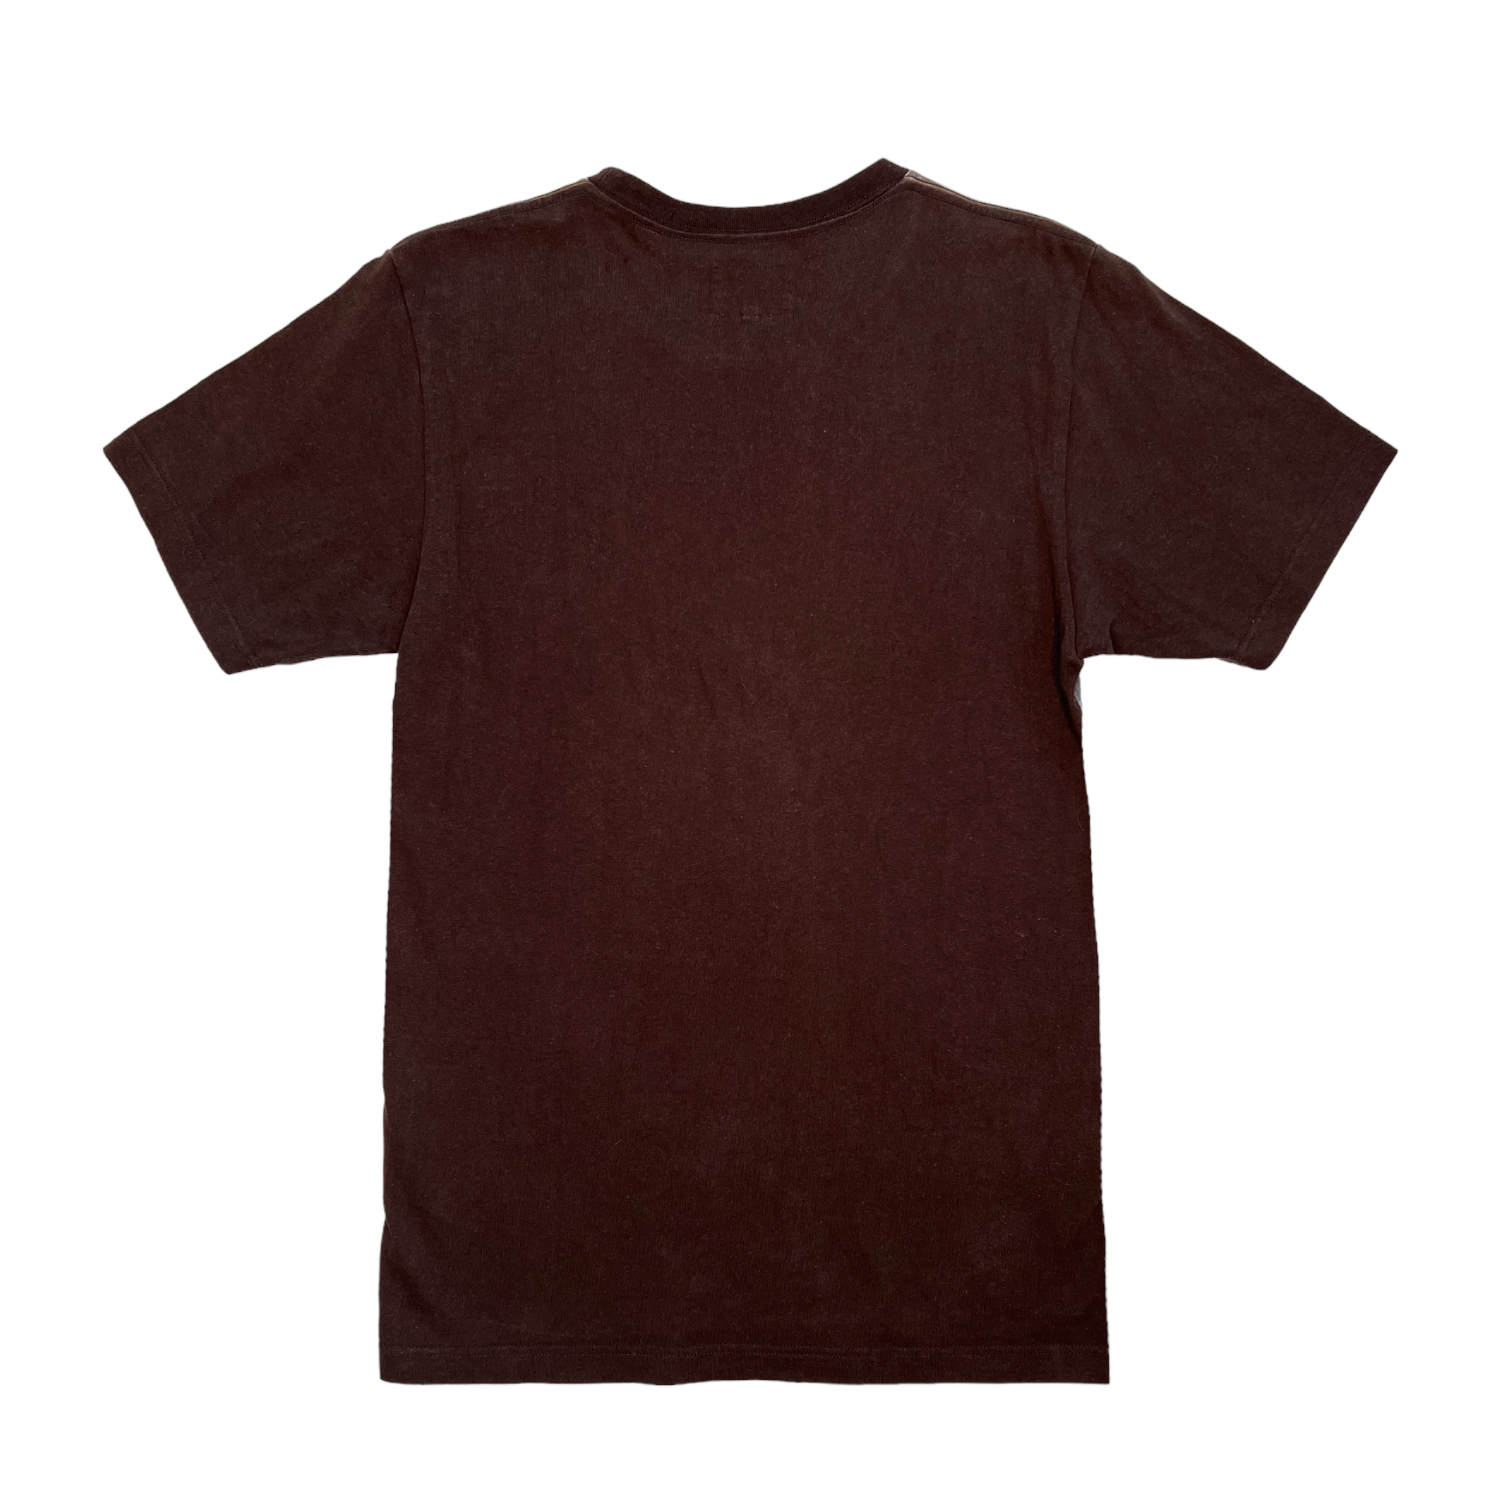 Vivienne Westwood Shirt (M/L)